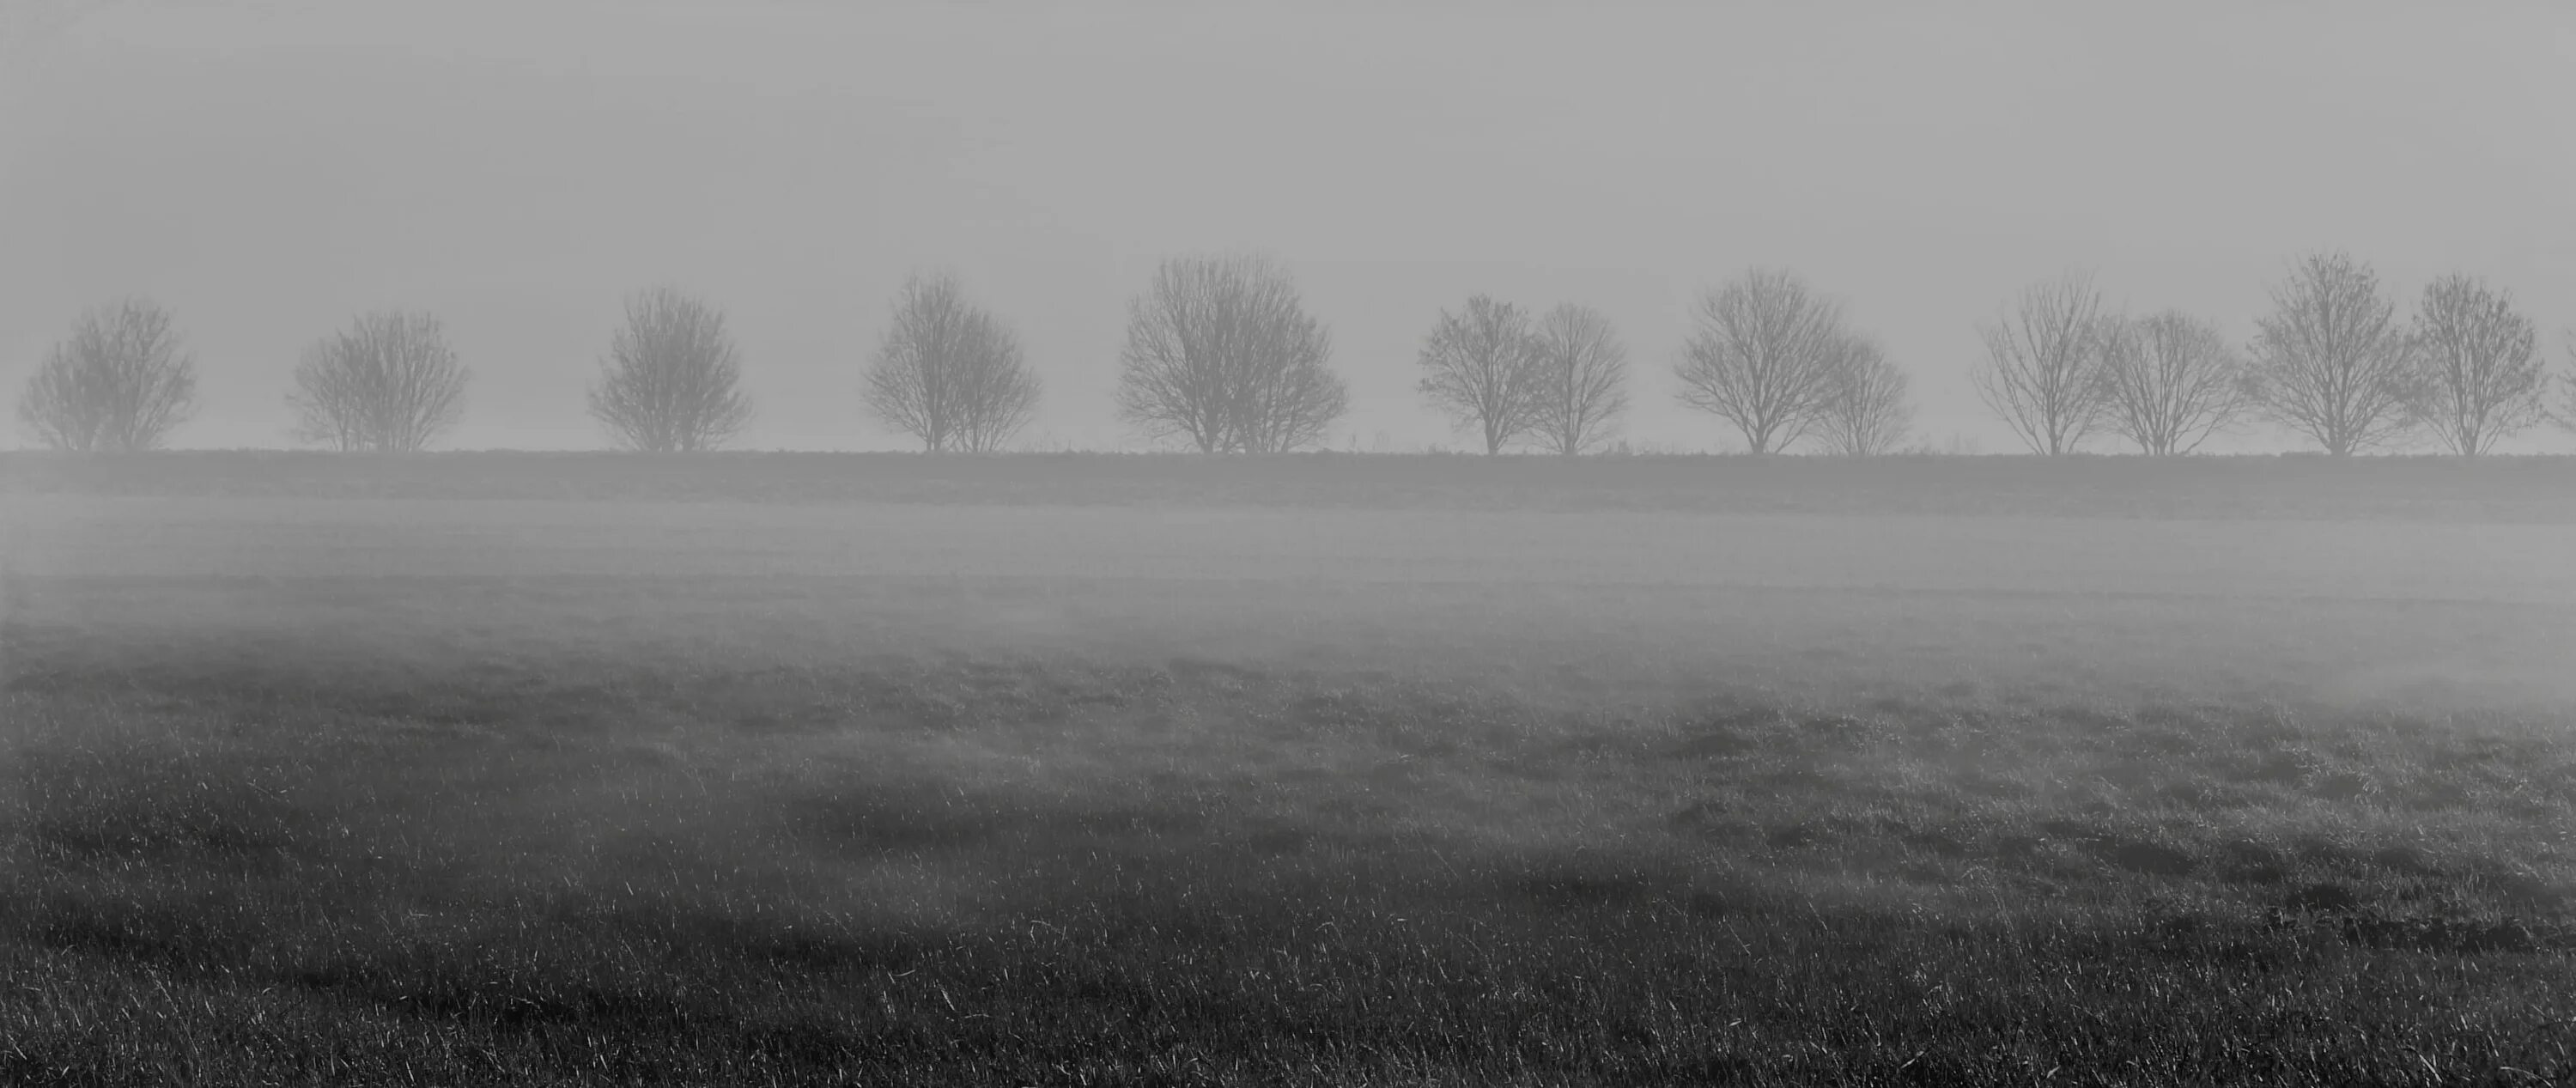 Белый туман. Серый туман. Серая трава. Туман и трава серое. Почему видео серое